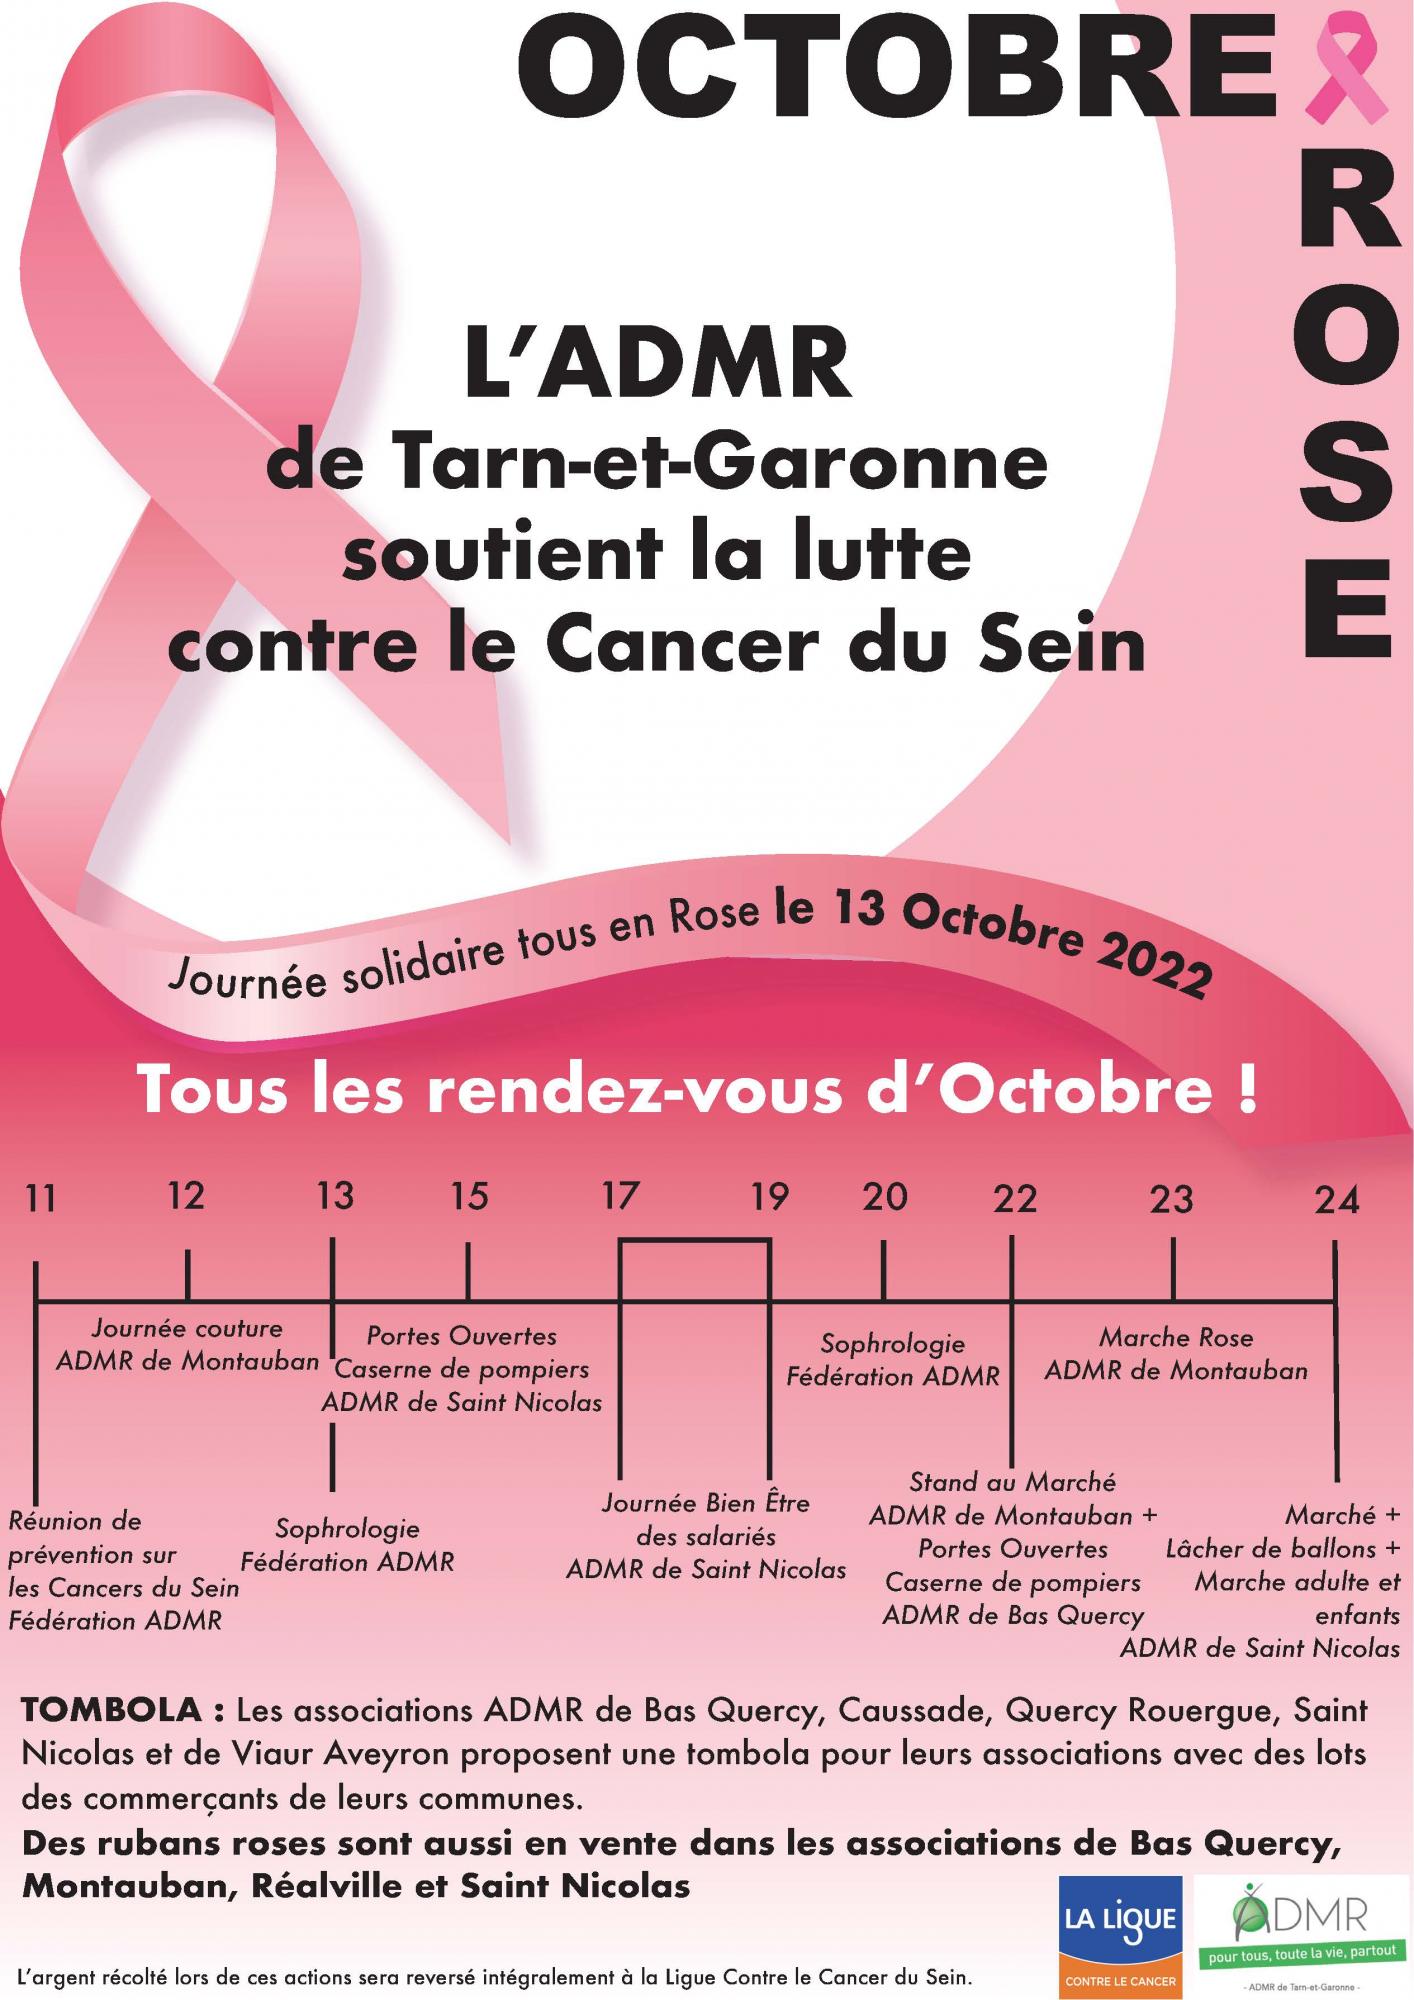 Les rendez-vous d'Octobre Rose avec l'ADMR de Tarn-et-Garonne